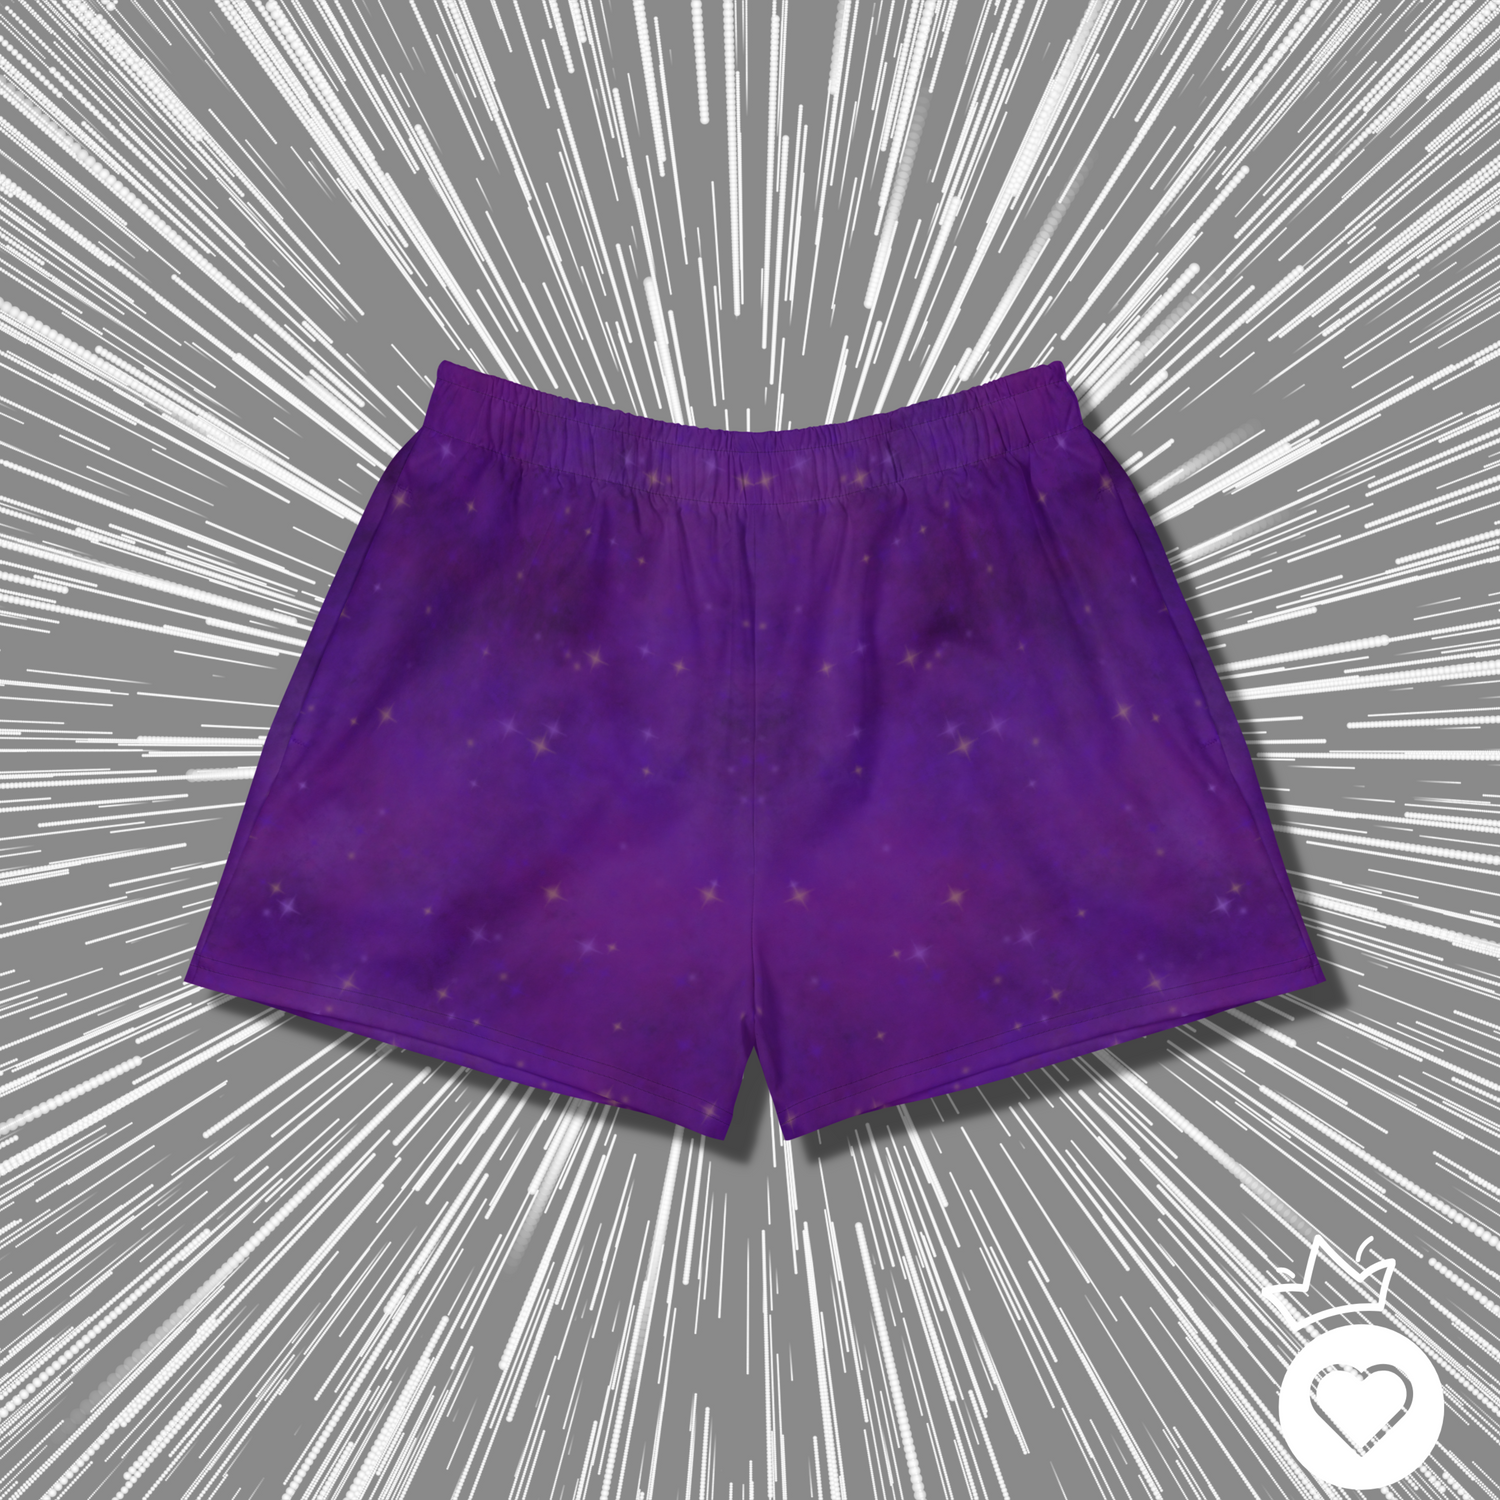 A Galaxy Far Away Pants and Shorts